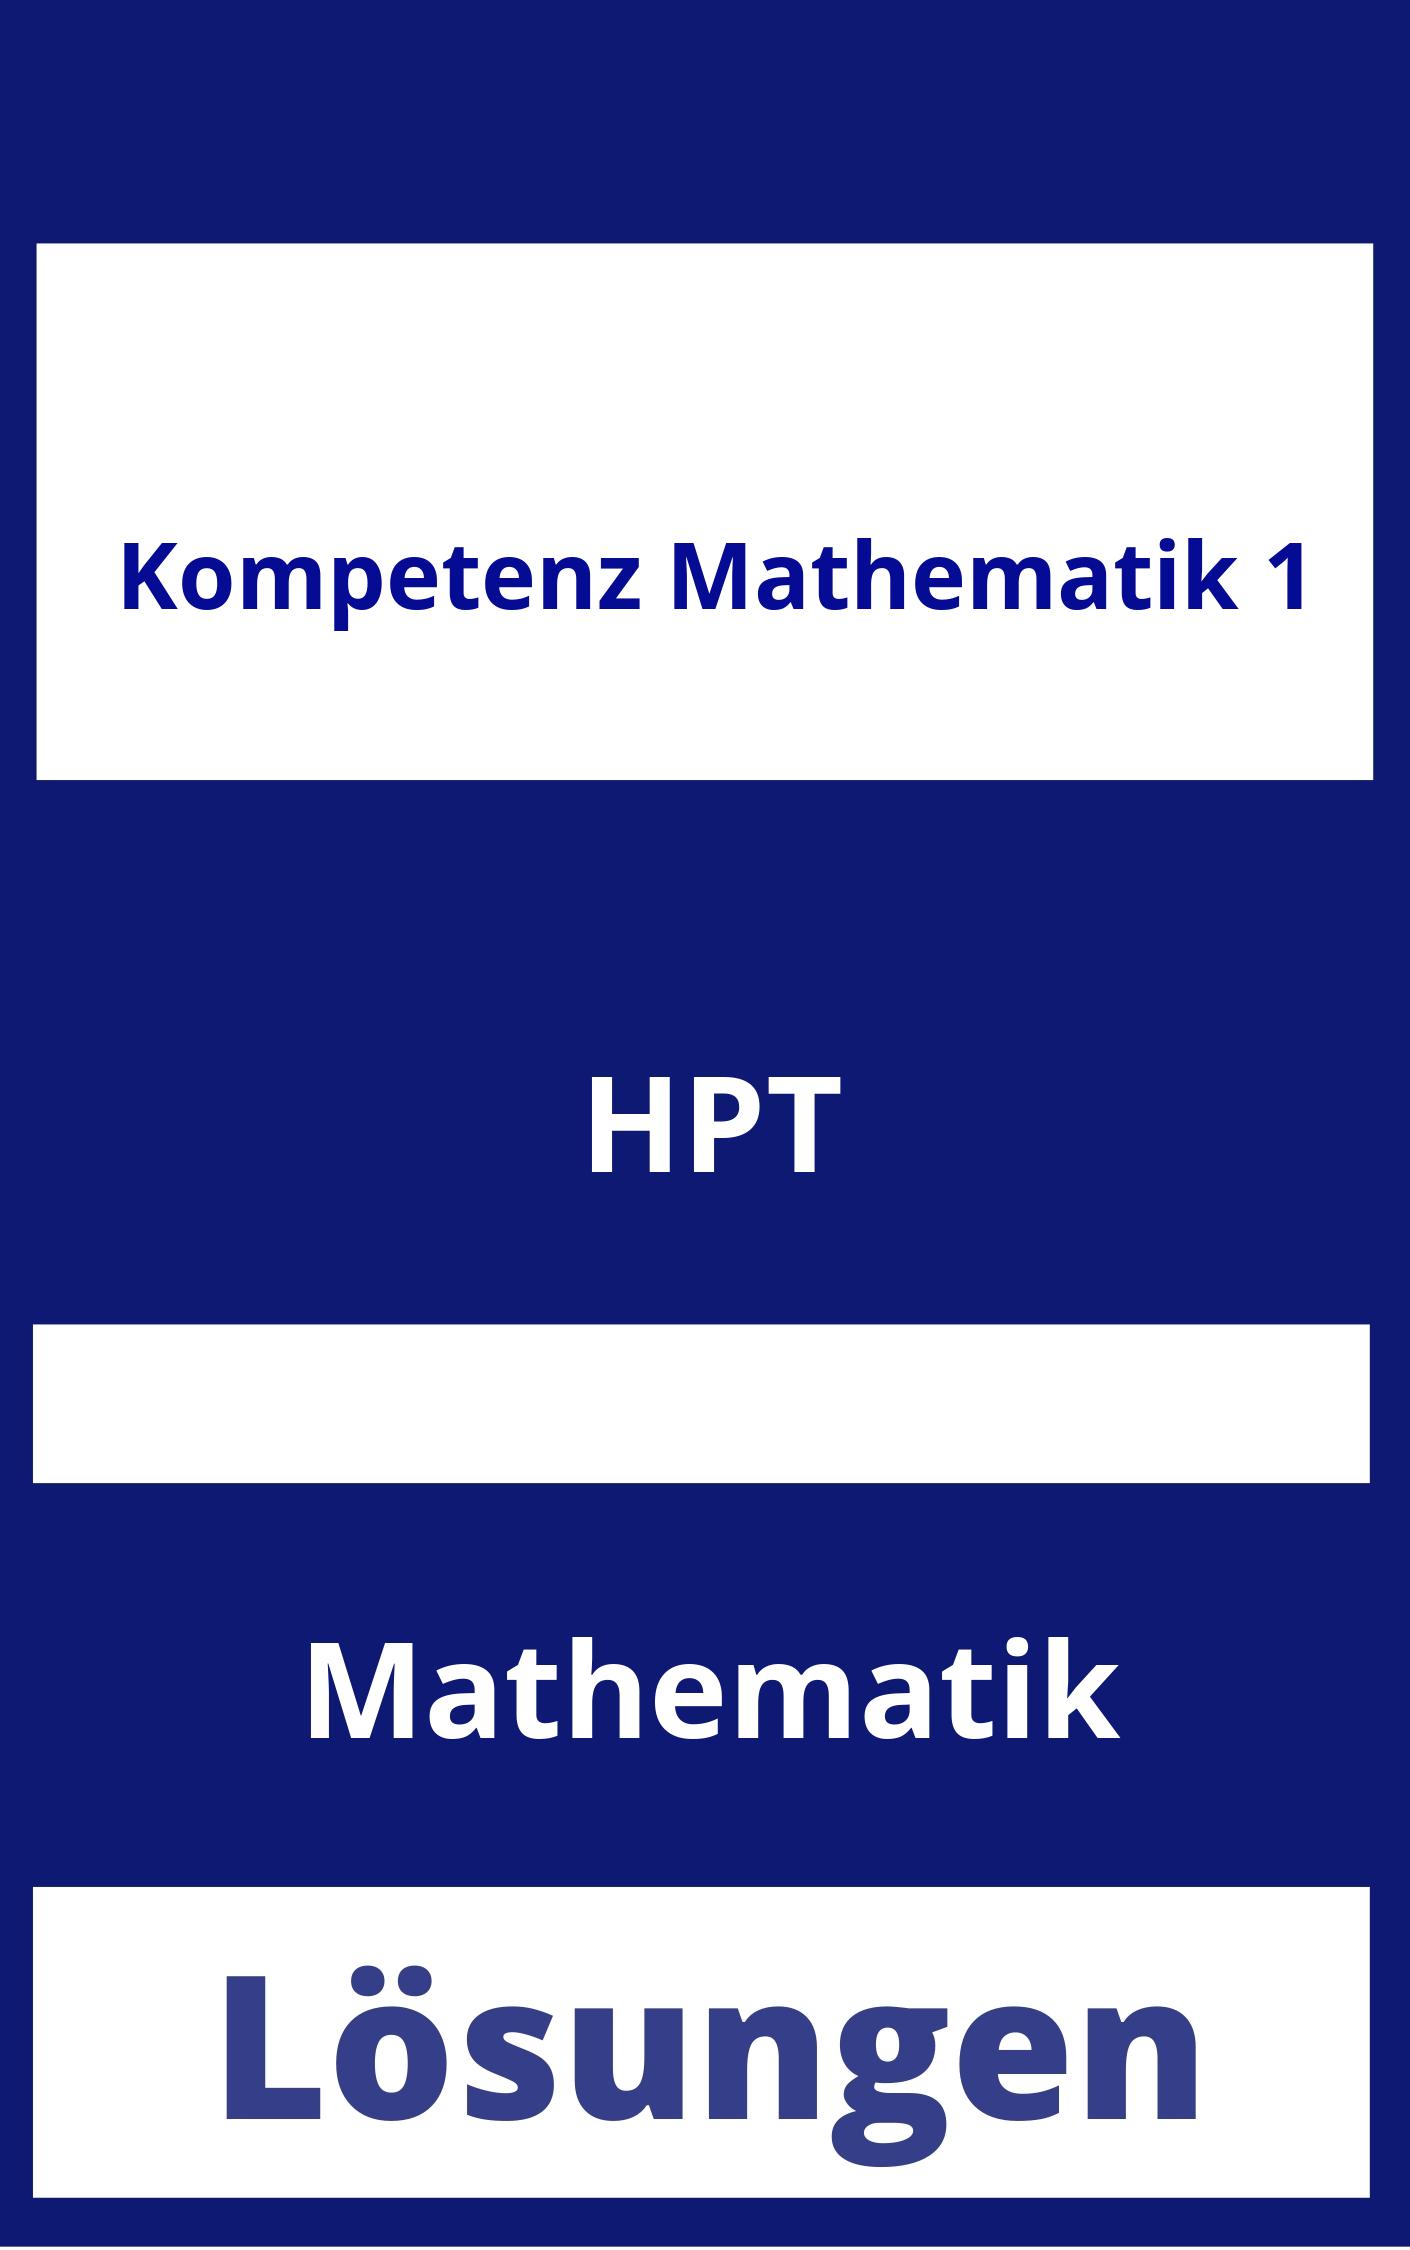 Kompetenz Mathematik 1 Lösungen PDF